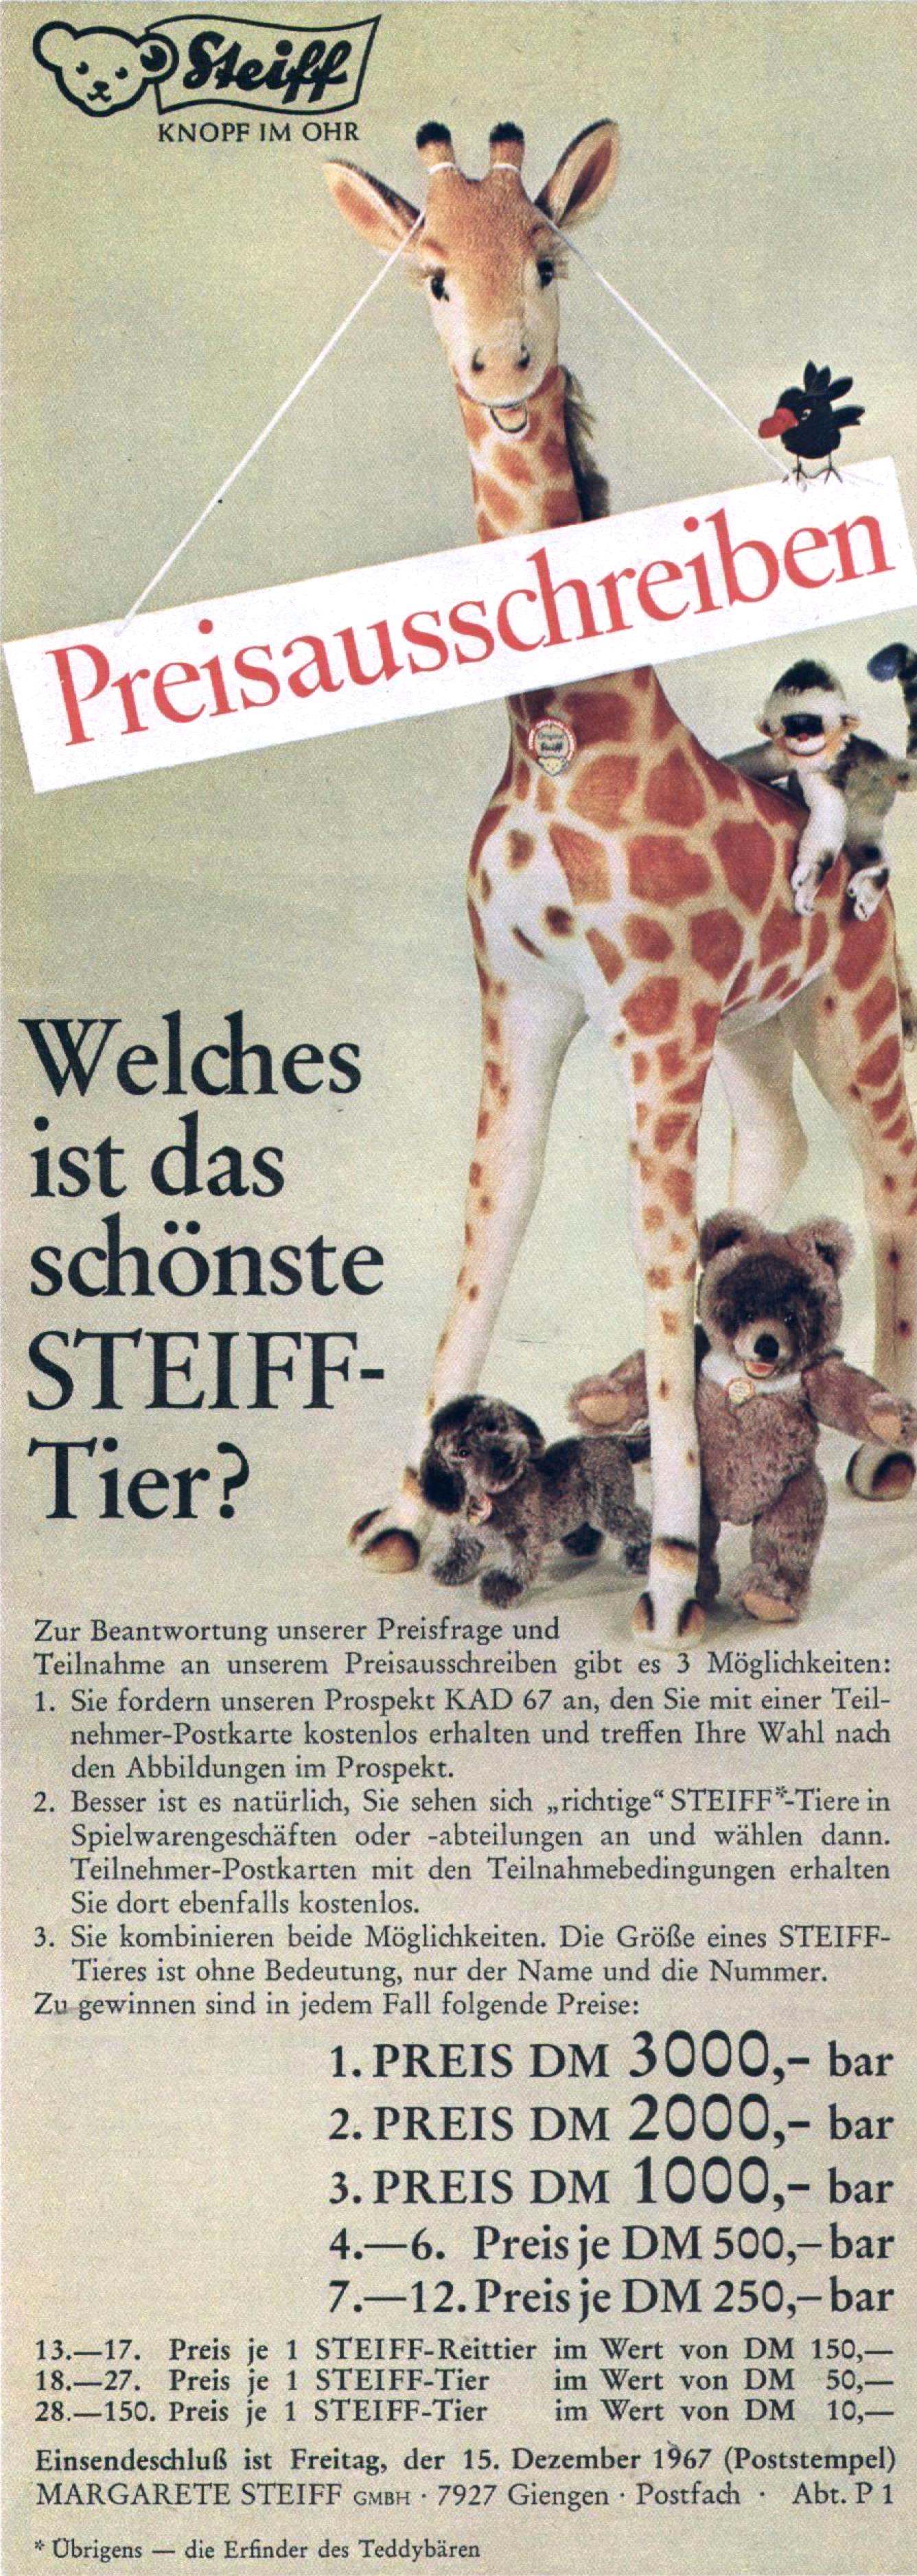 Steiff 1967 363.jpg